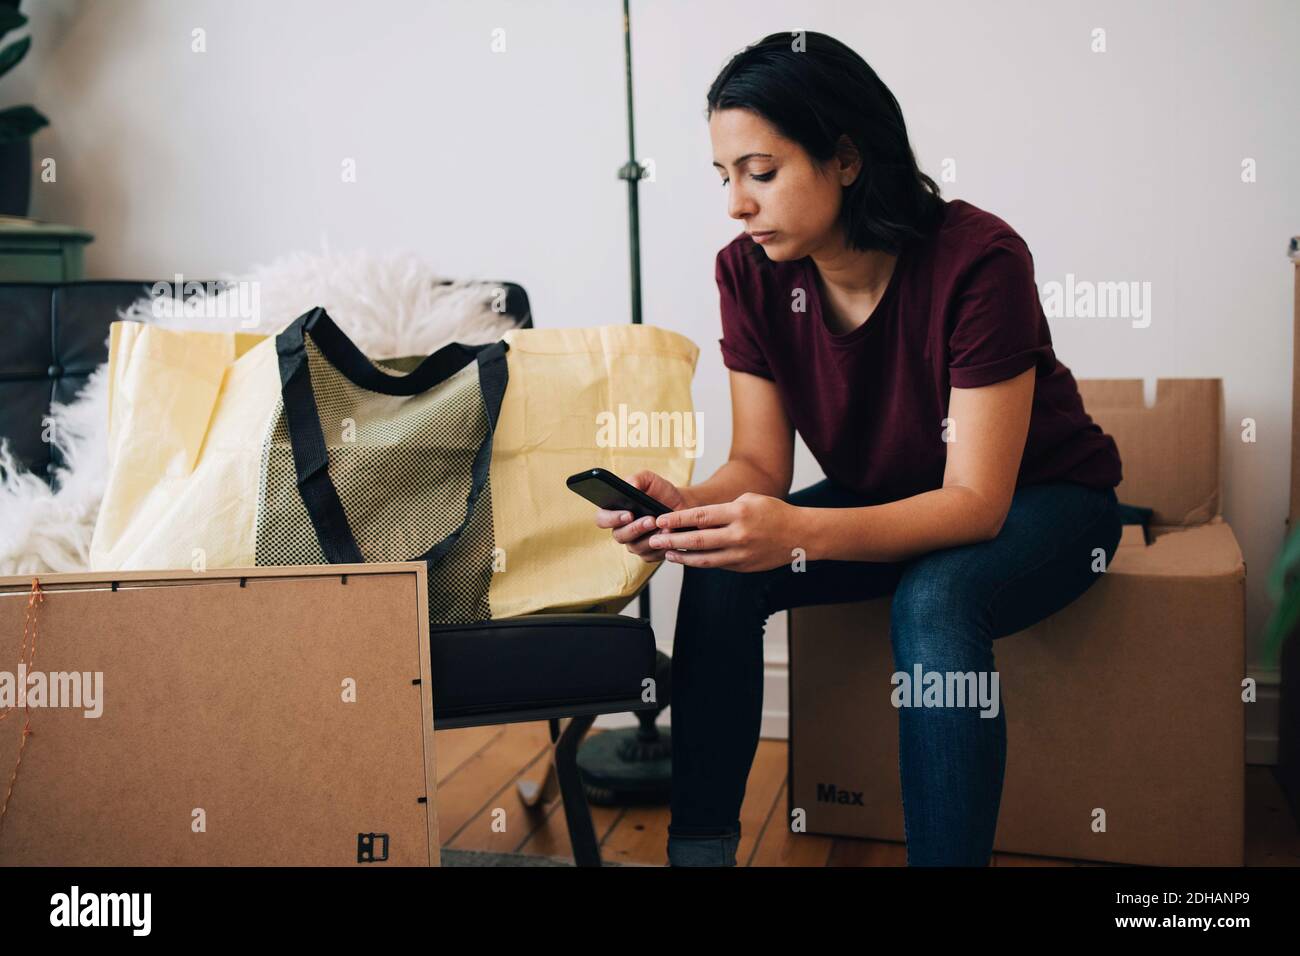 Mittlere Erwachsene Frau mit Mobiltelefon, während sie auf der Box sitzt Gegen die Wand Stockfoto